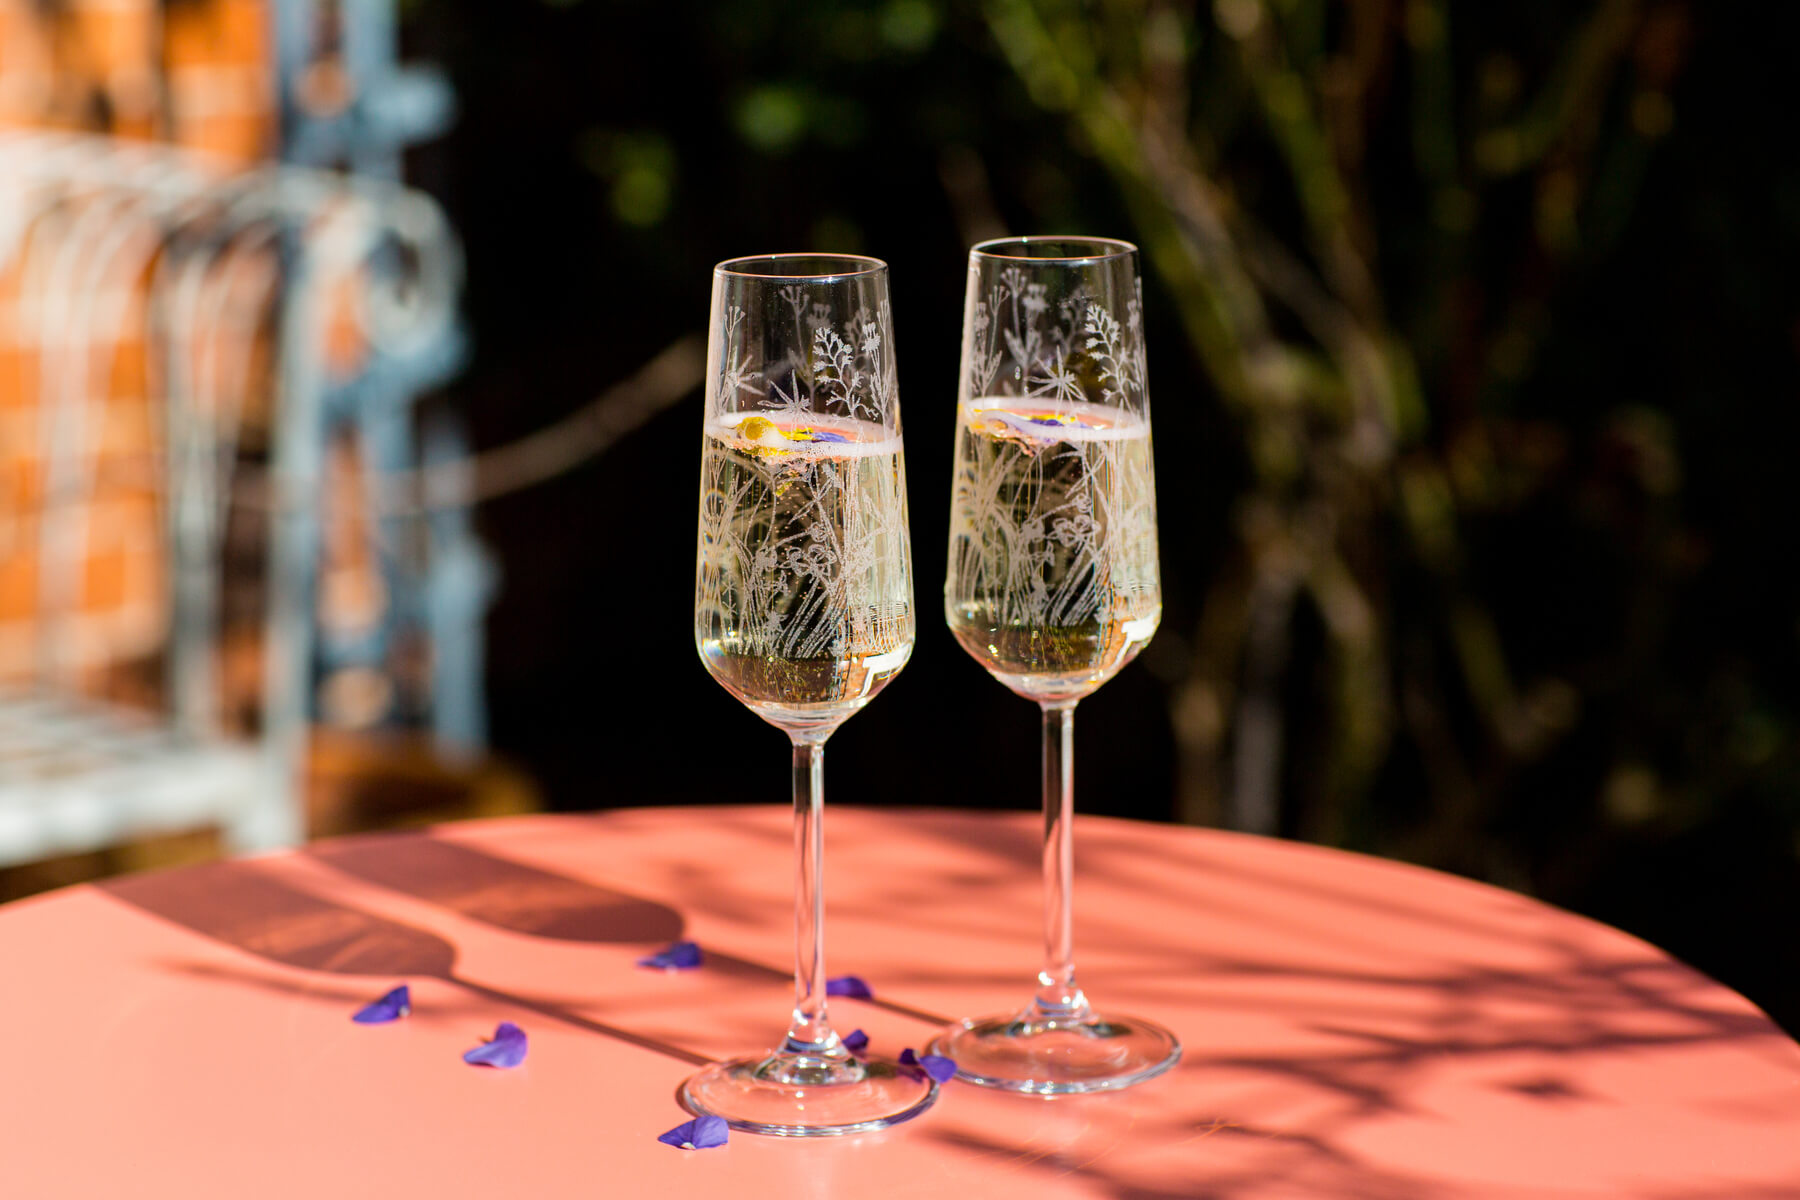 emma-britton-champagne-glasses-flutes-meadow-design-glassware-couples.jpg